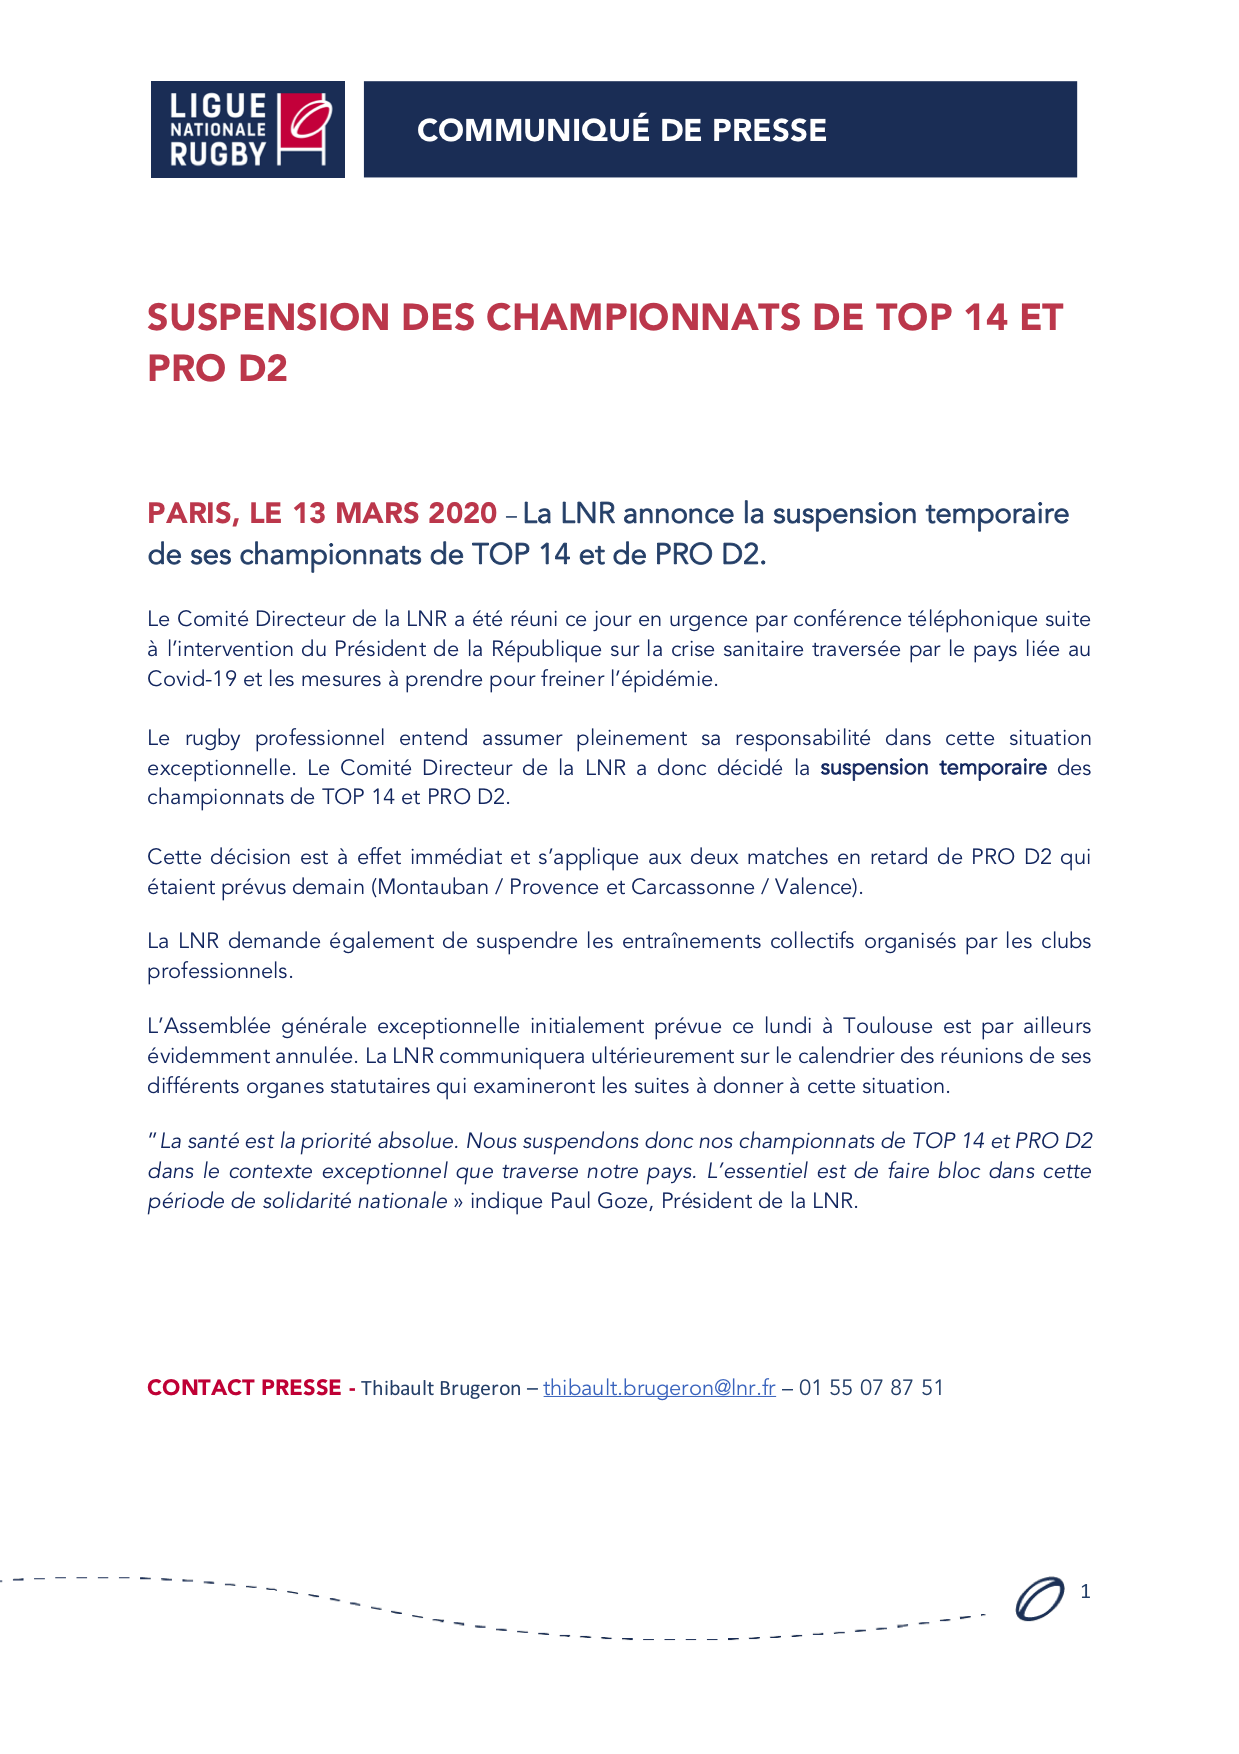 Communiqué - Suspension des championnats TOP 14 & PRO D2